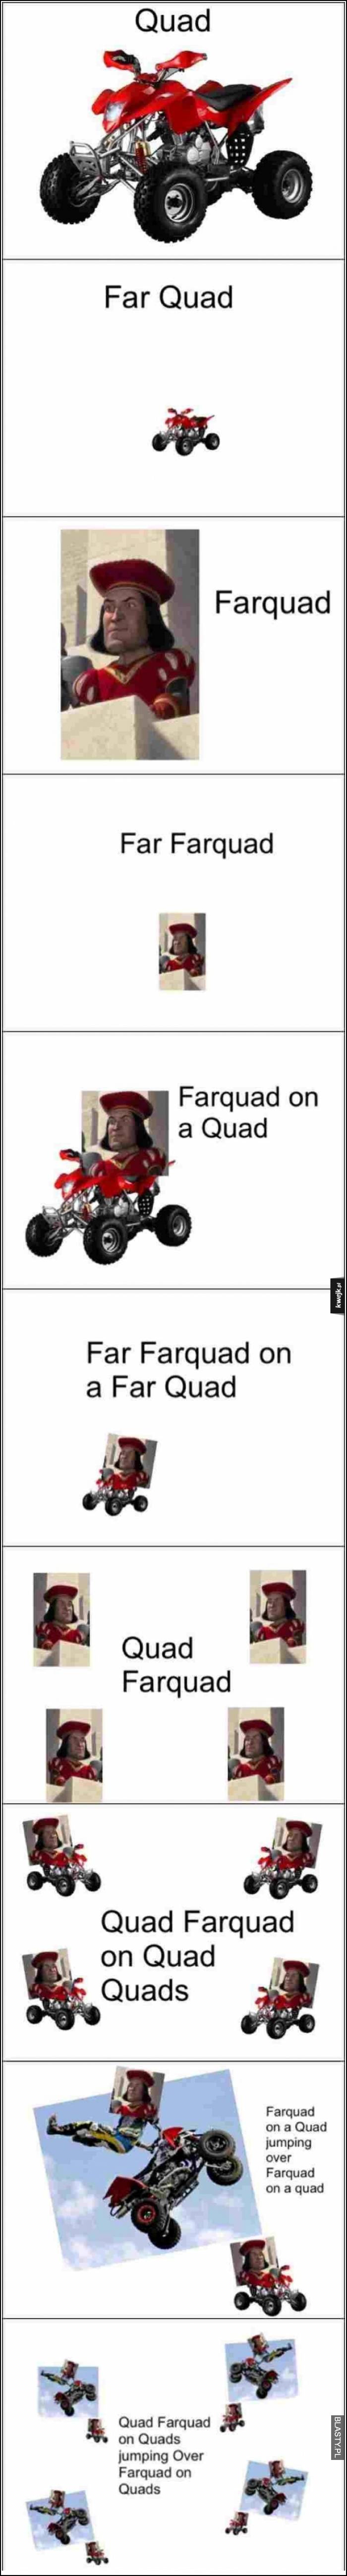 Far farquad on far quad